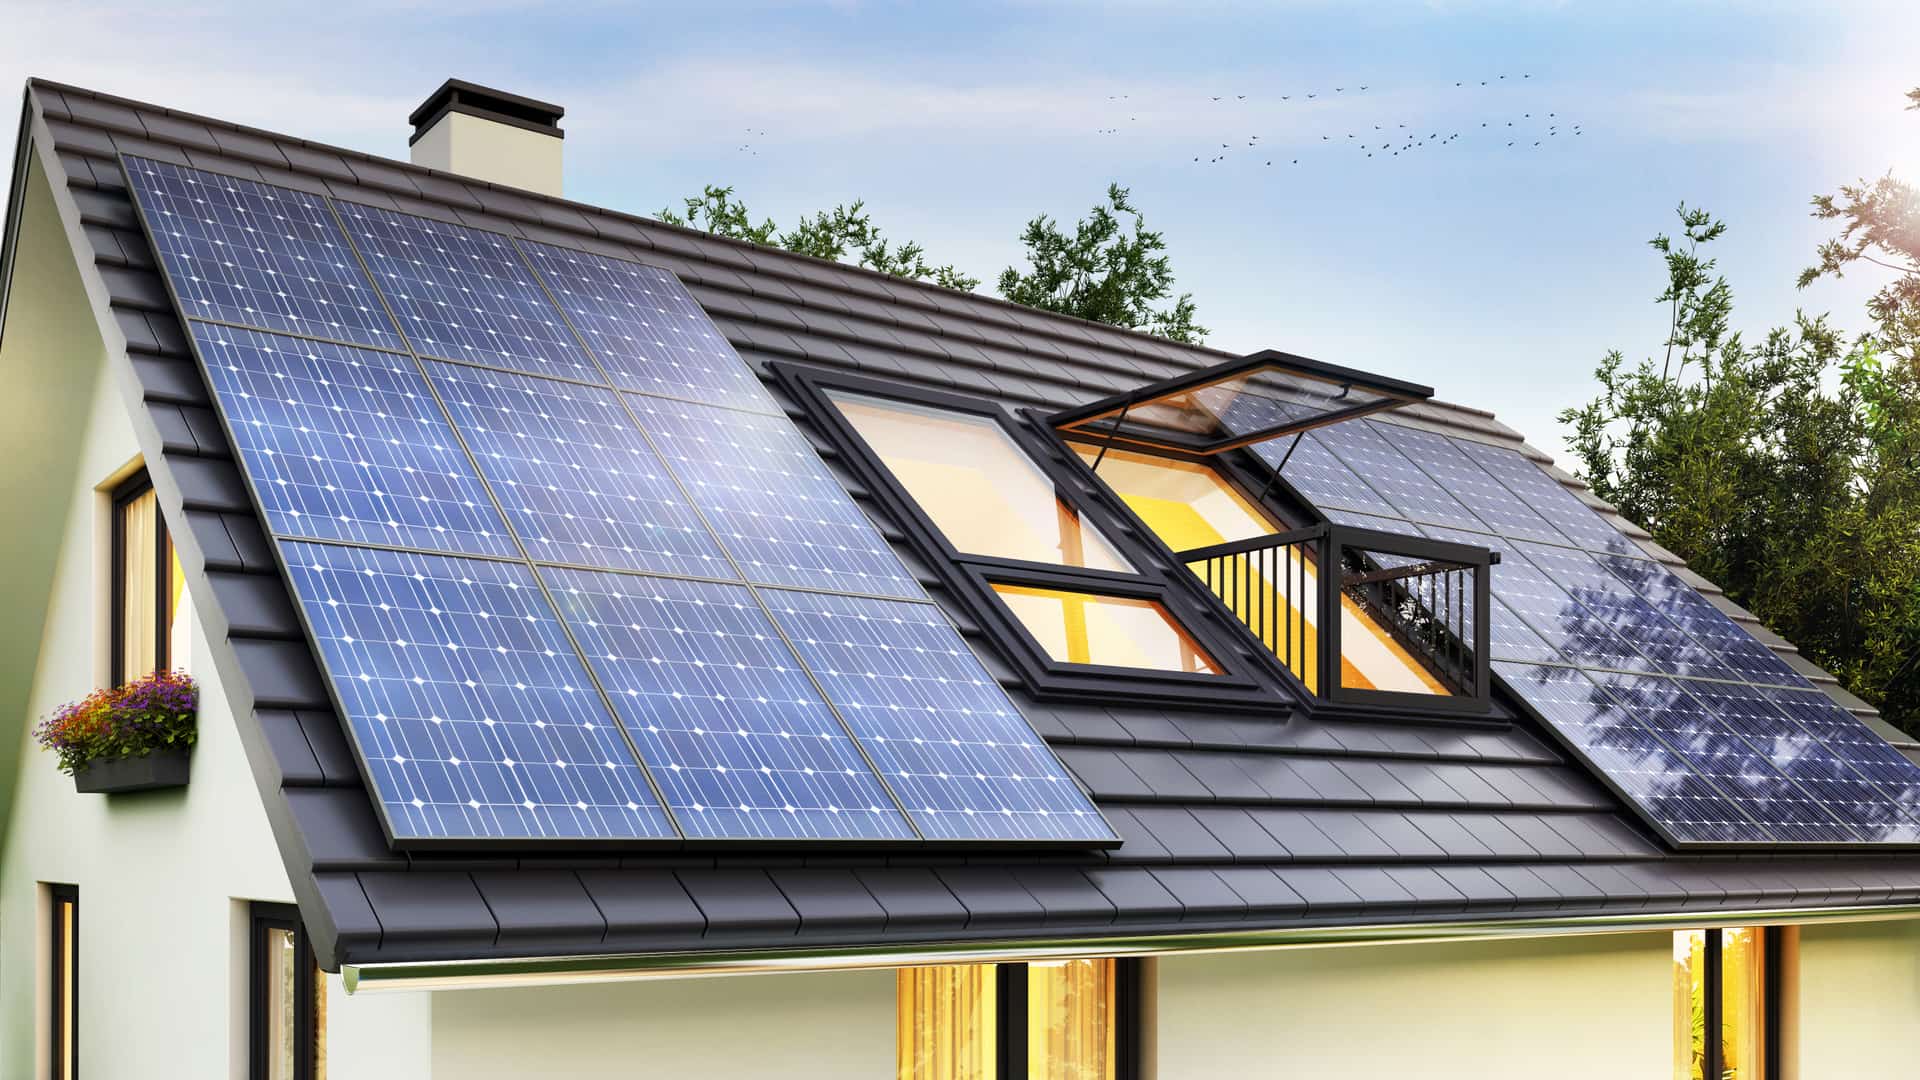 Casa con placas solares en el tejado obtenidas mediante un alquiler de las mismas